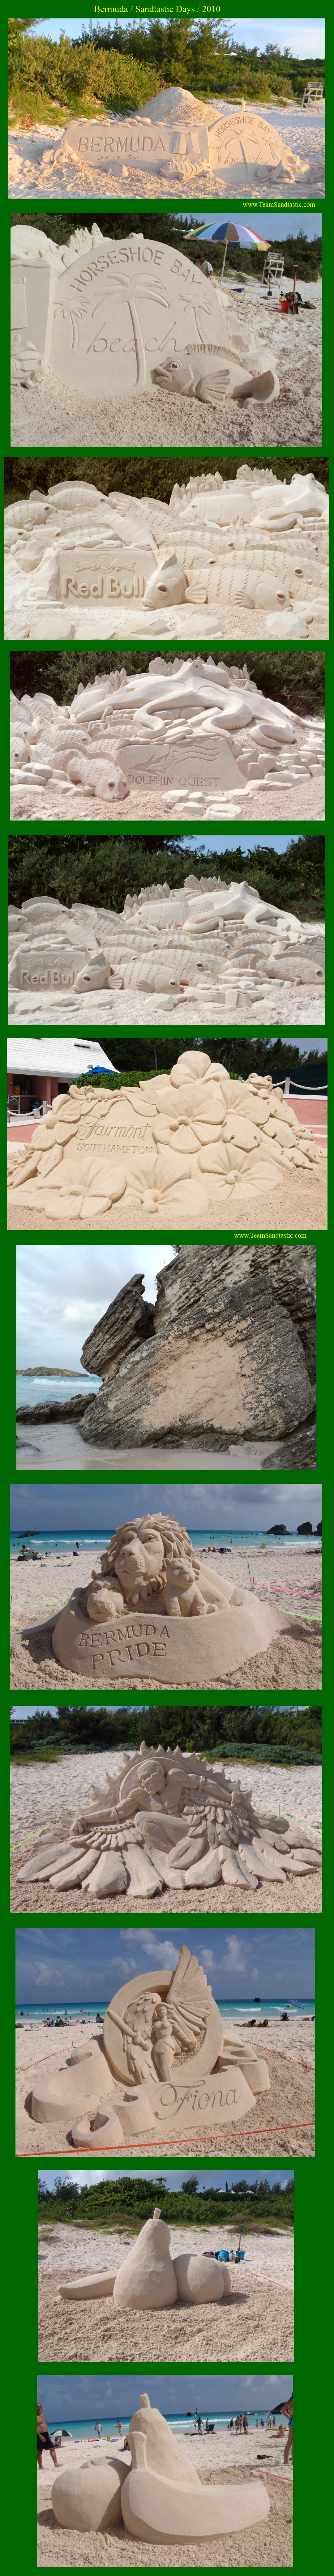 Bermuda Sand Sculpting Contest